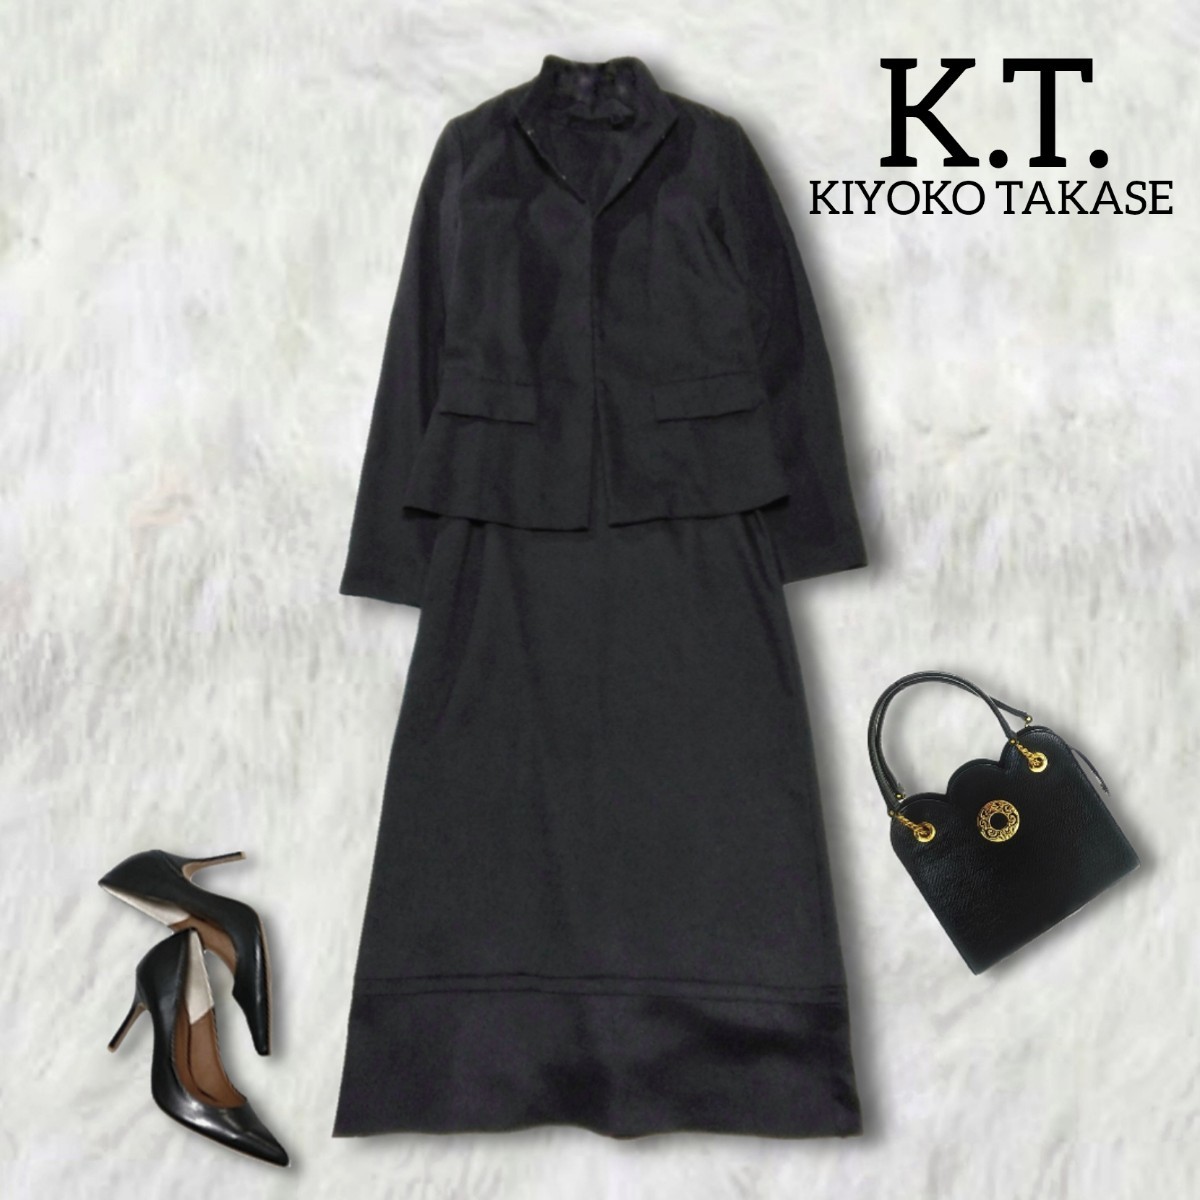 337 【K.T. KIYOKO TAKASE】 キヨコタカセ フォーマル ワンピーススーツ ロング Mサイズ 黒 ブラック セットアップスーツ レディース